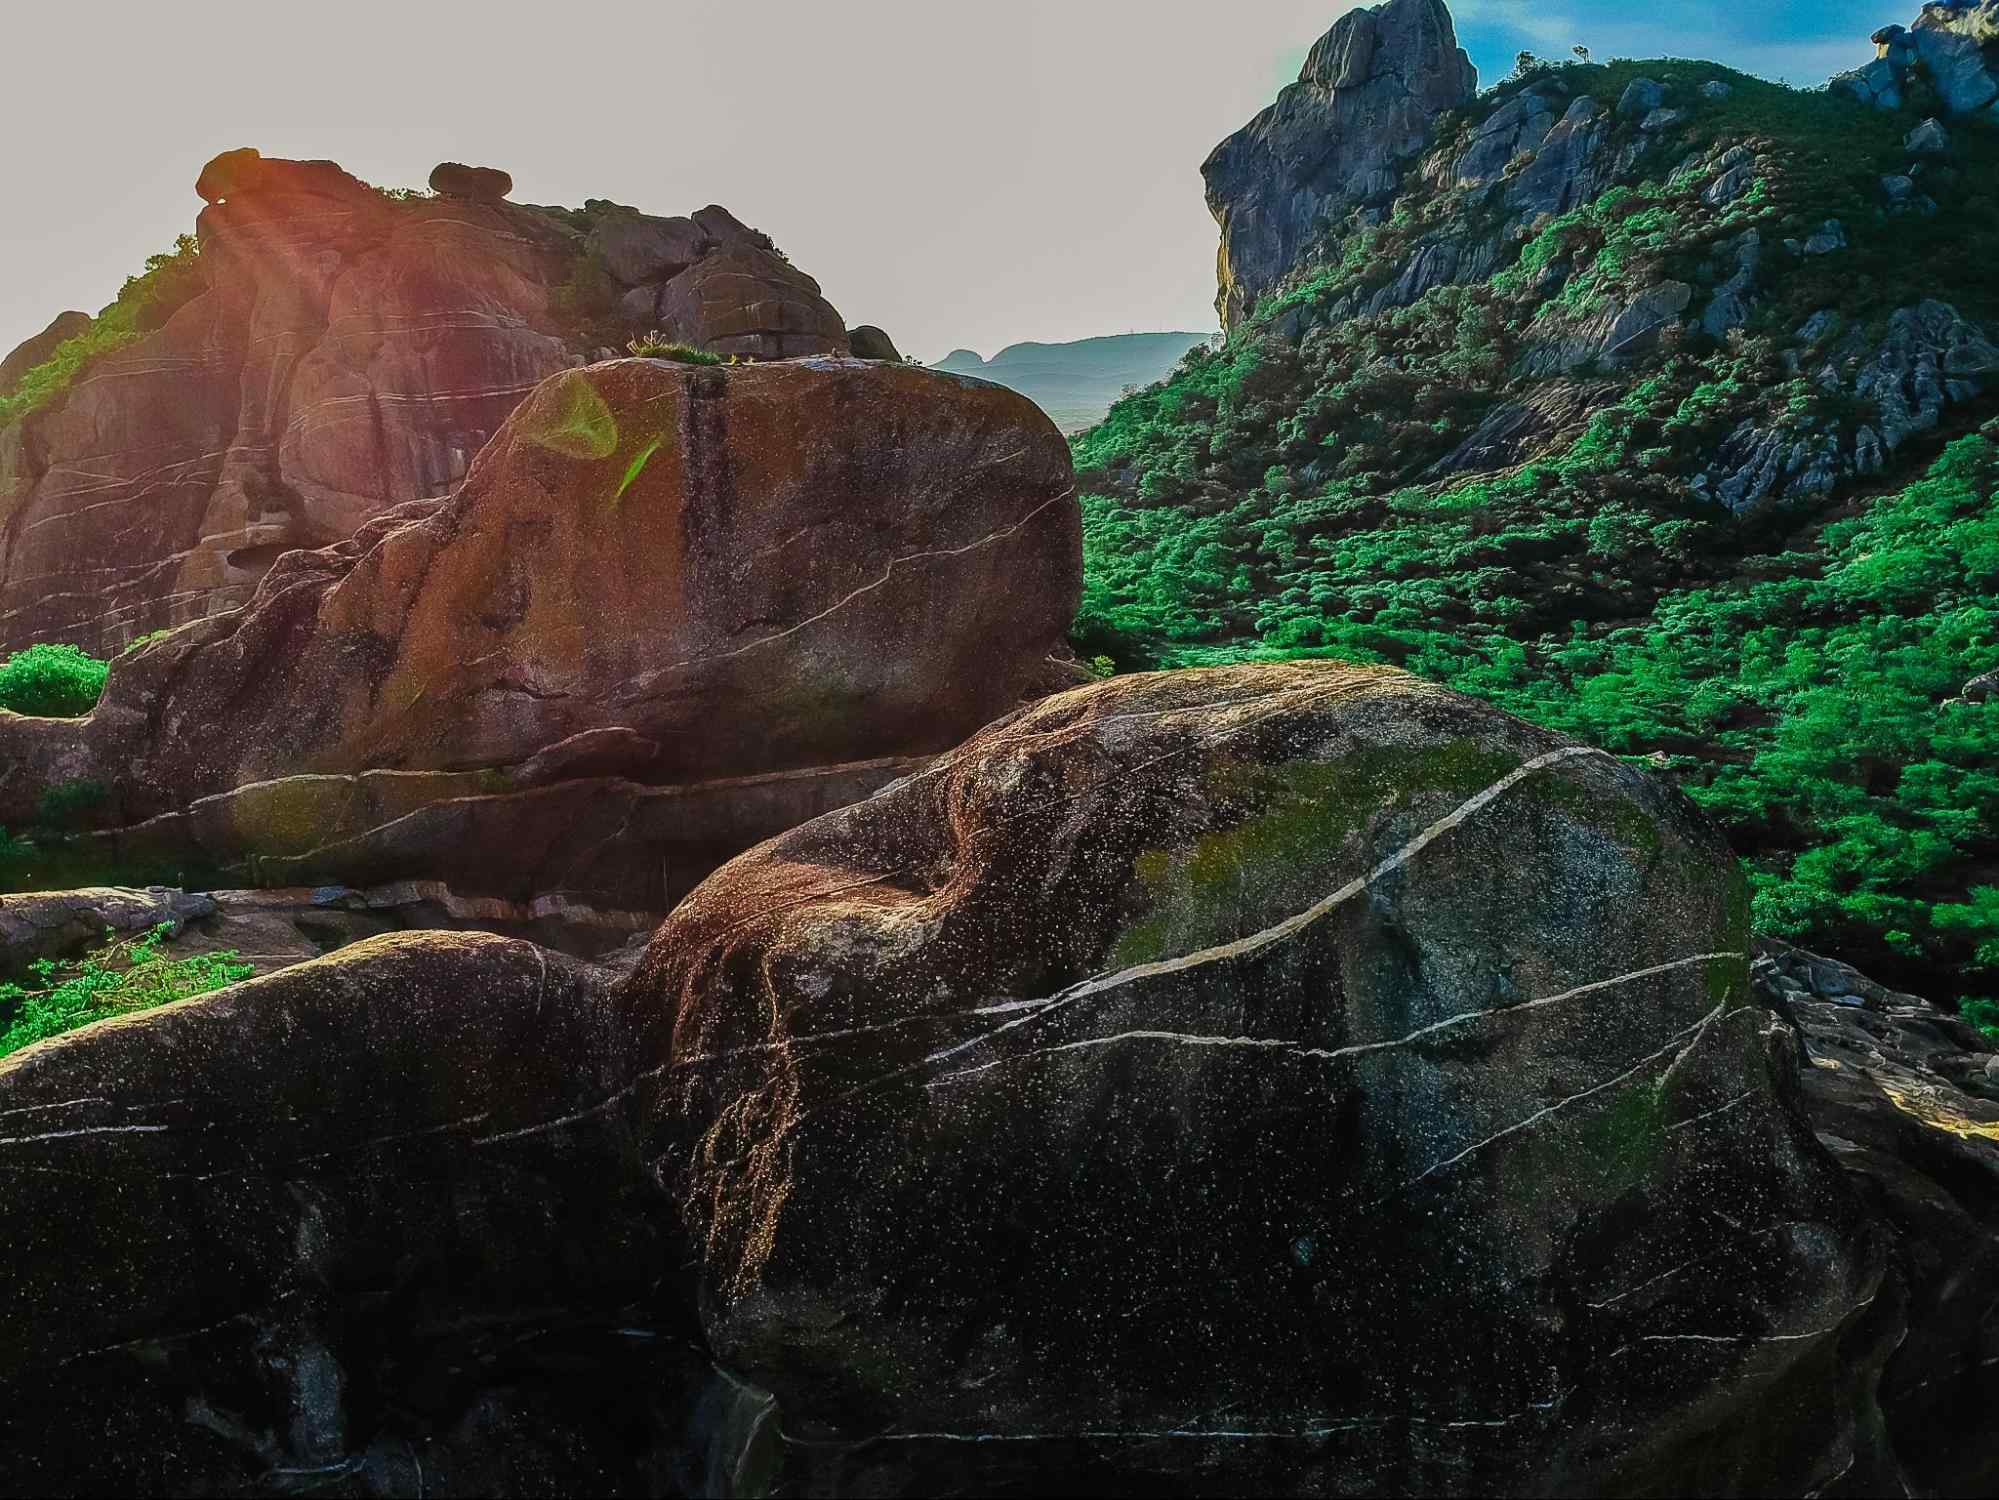 Pedras cobertas de vegetação e limo, espalhadas no topo do morro de uma das montanhas de Quixadá, CE.